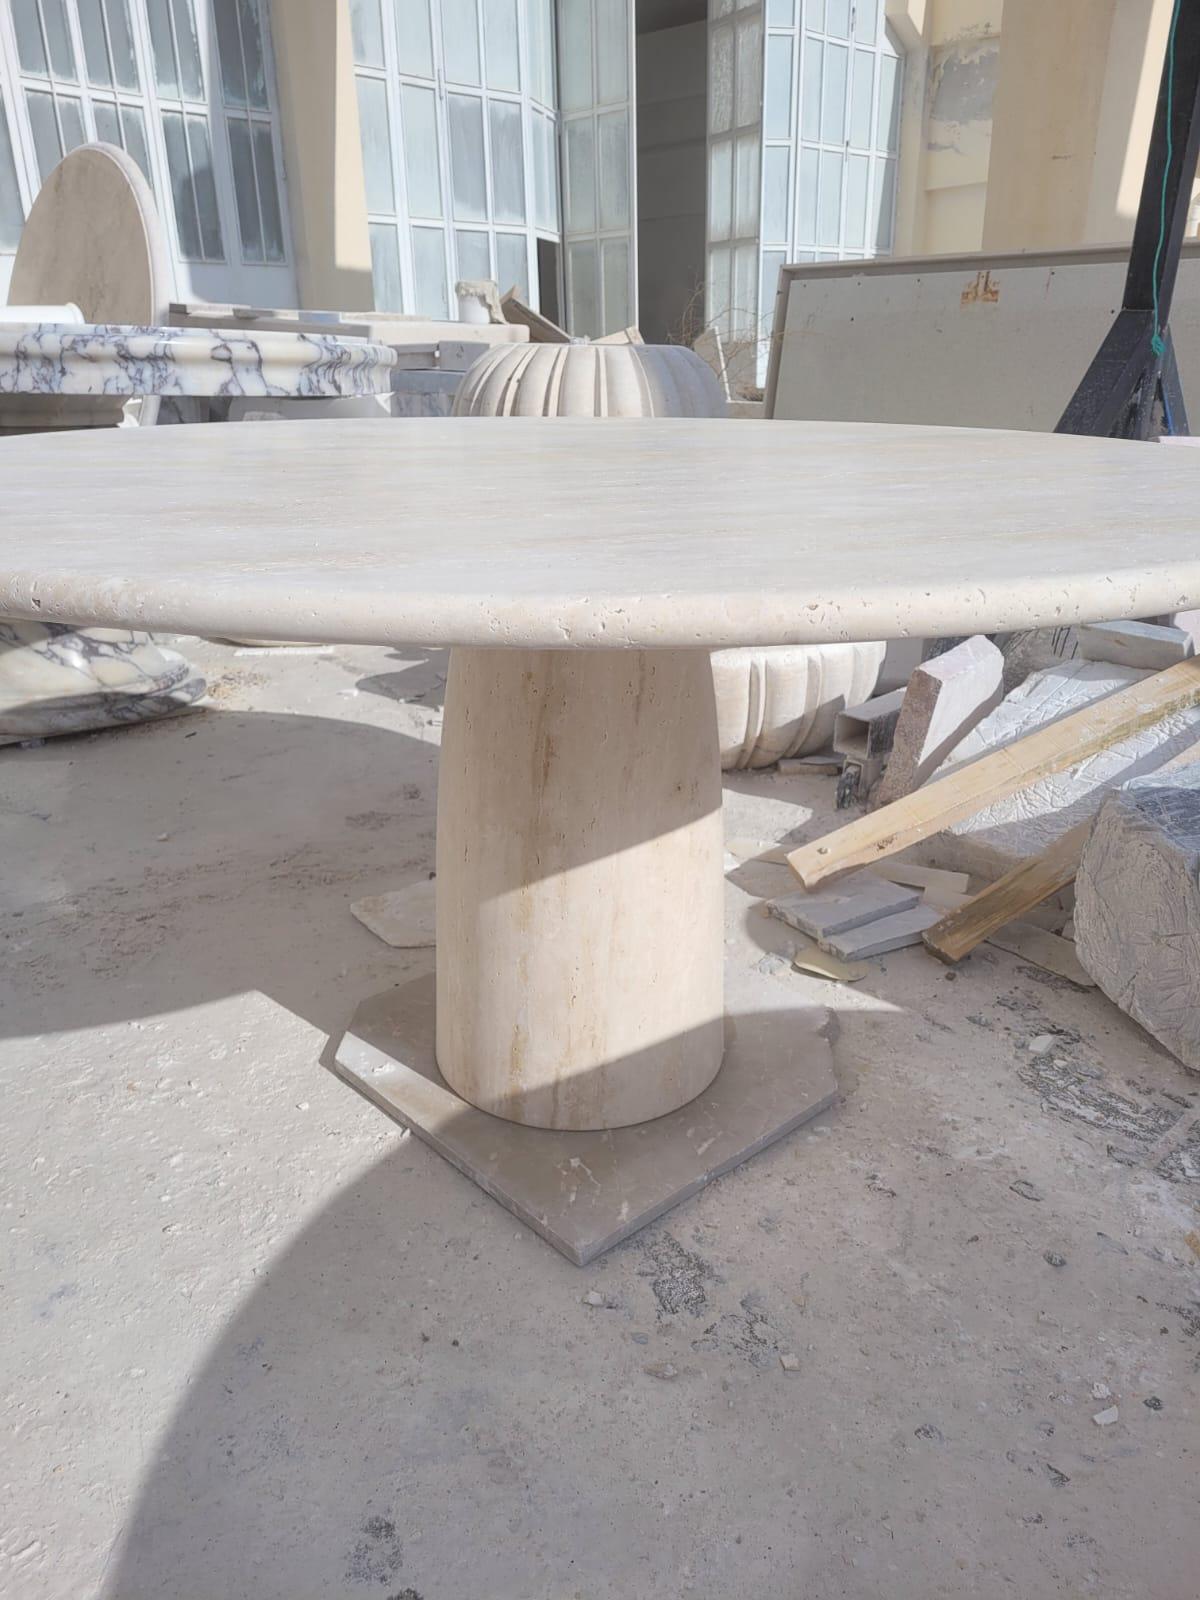 Cette table minimaliste est fabriquée en travertin clair massif, avec un pied en forme de cône et un plateau circulaire épais en travertin qui s'équilibre parfaitement et en toute sécurité avec son propre poids. 

S'inspirant des pièces vintage